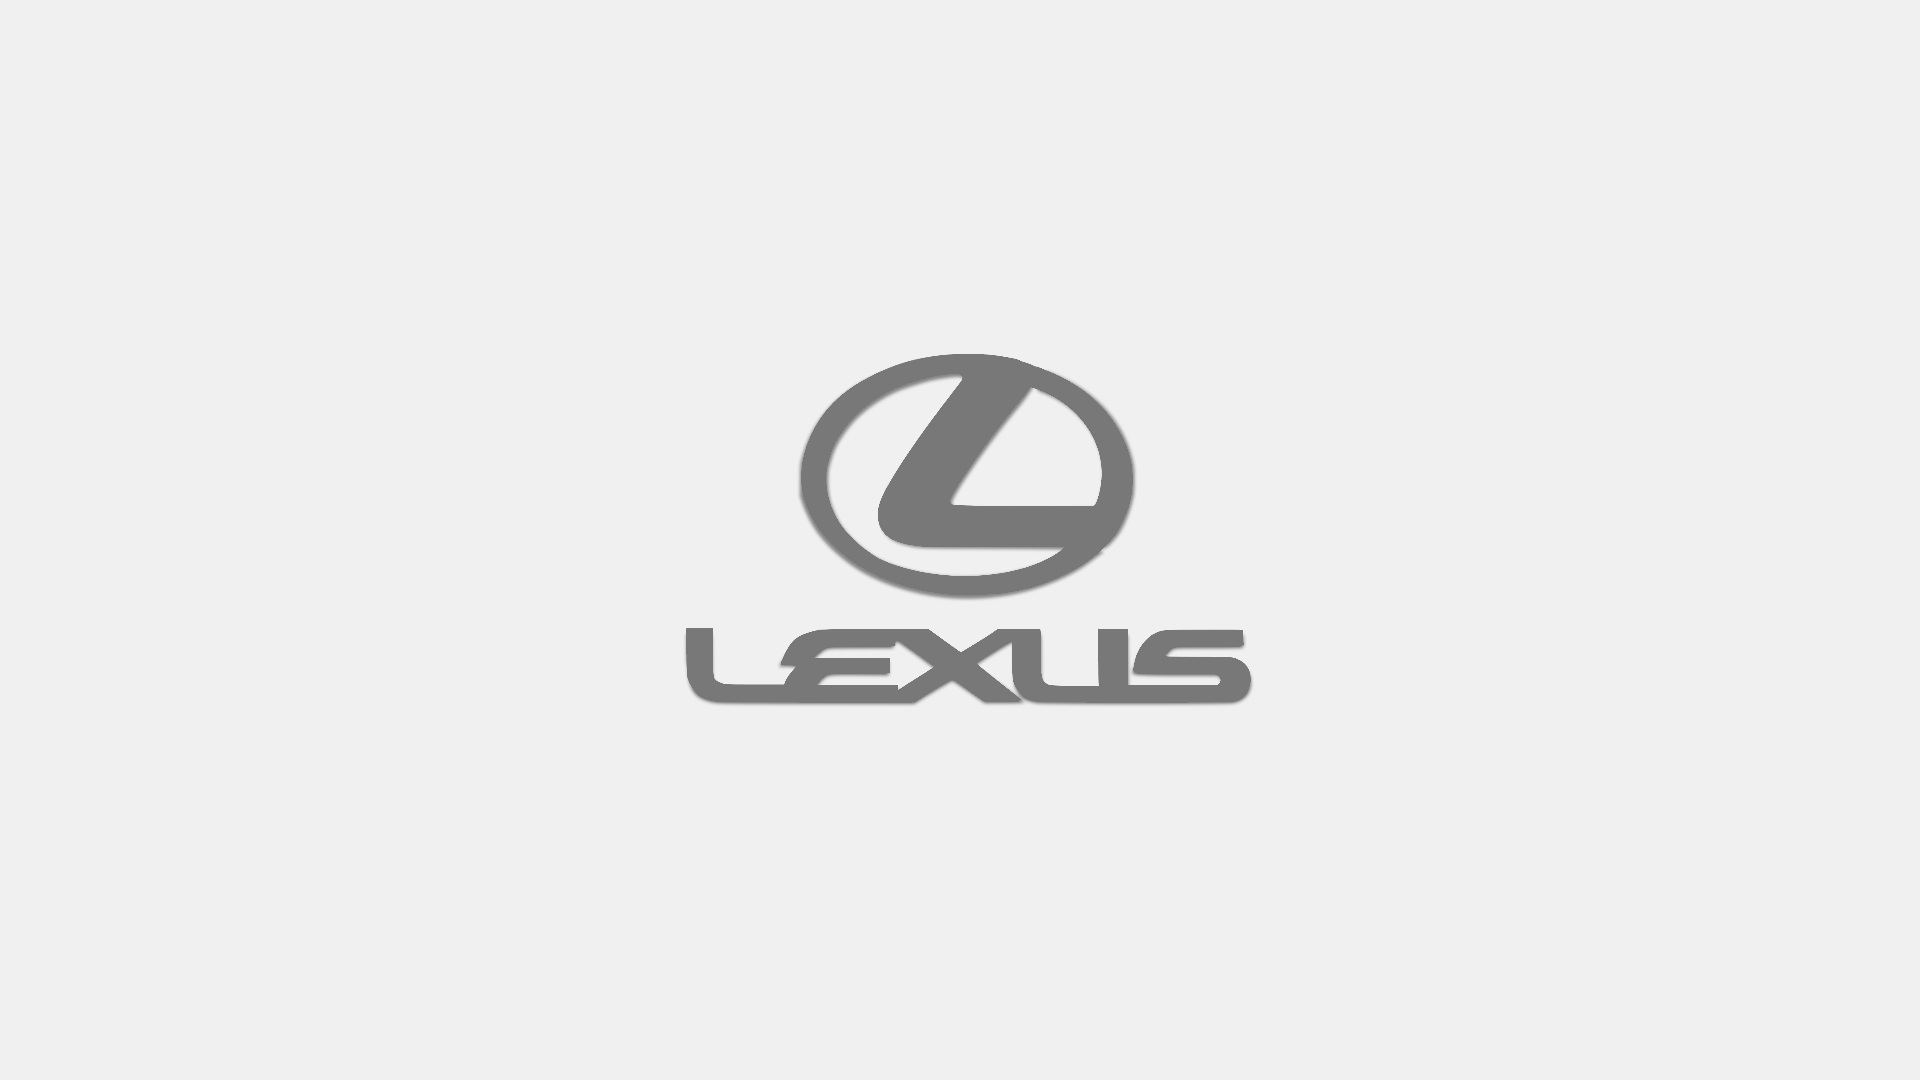 lexus logo wallpaper,logo,text,font,brand,trademark